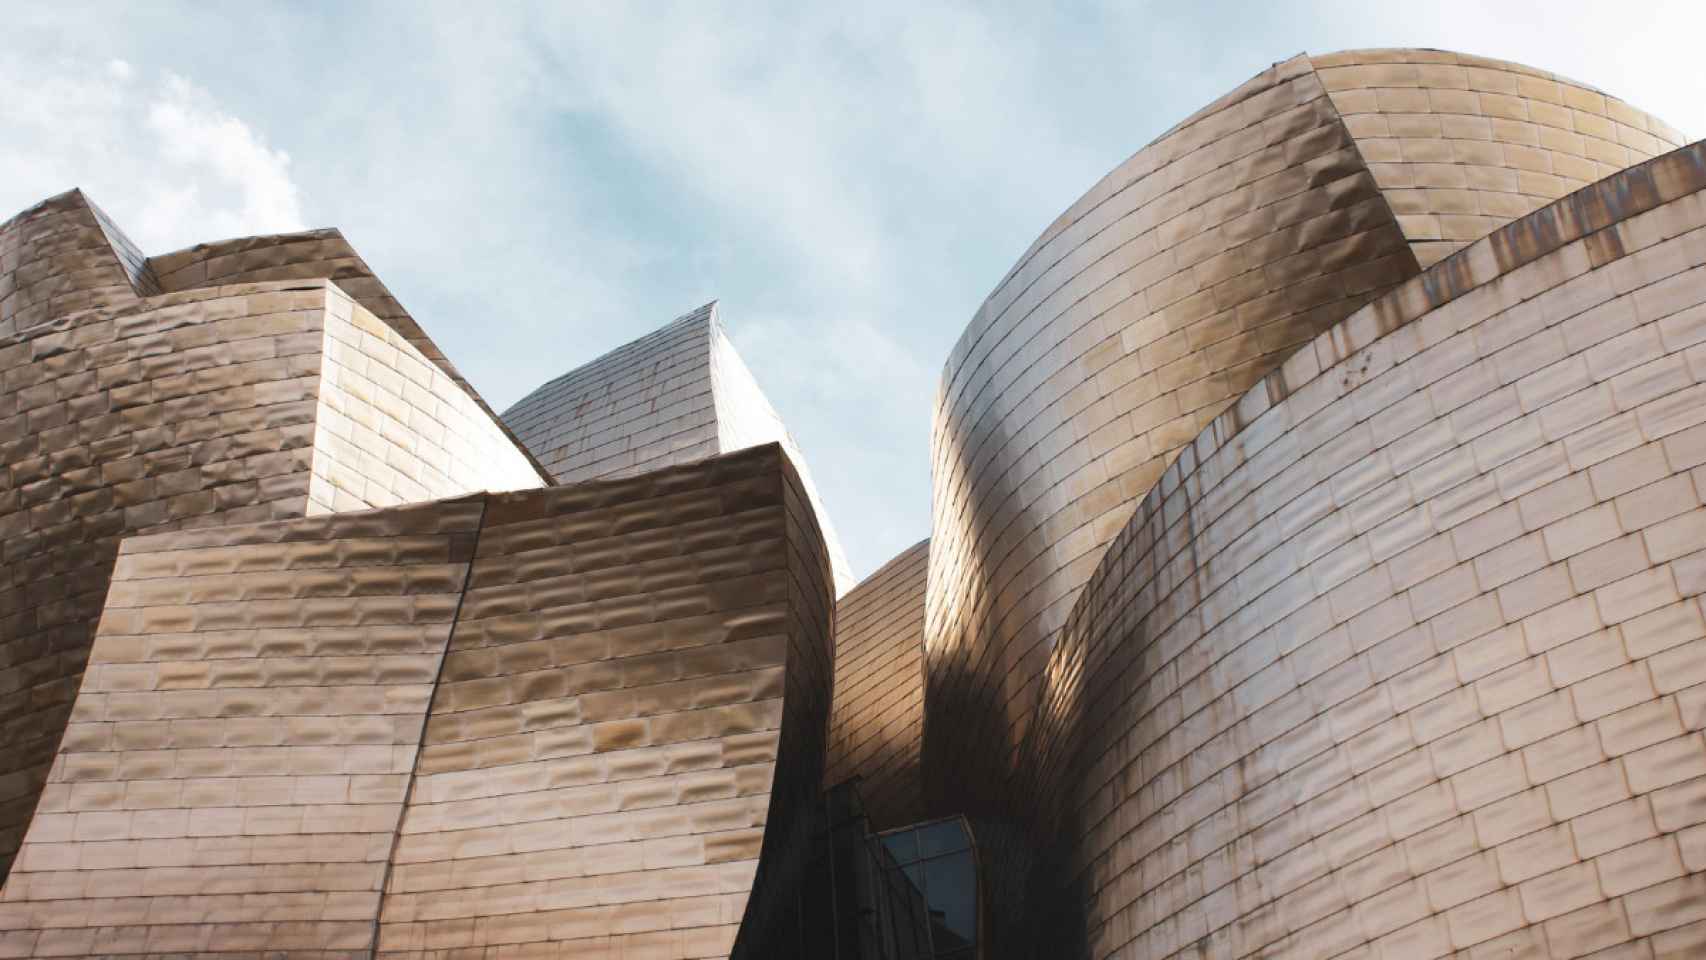 Museo Guggenheim de Bilbao / PEXELS